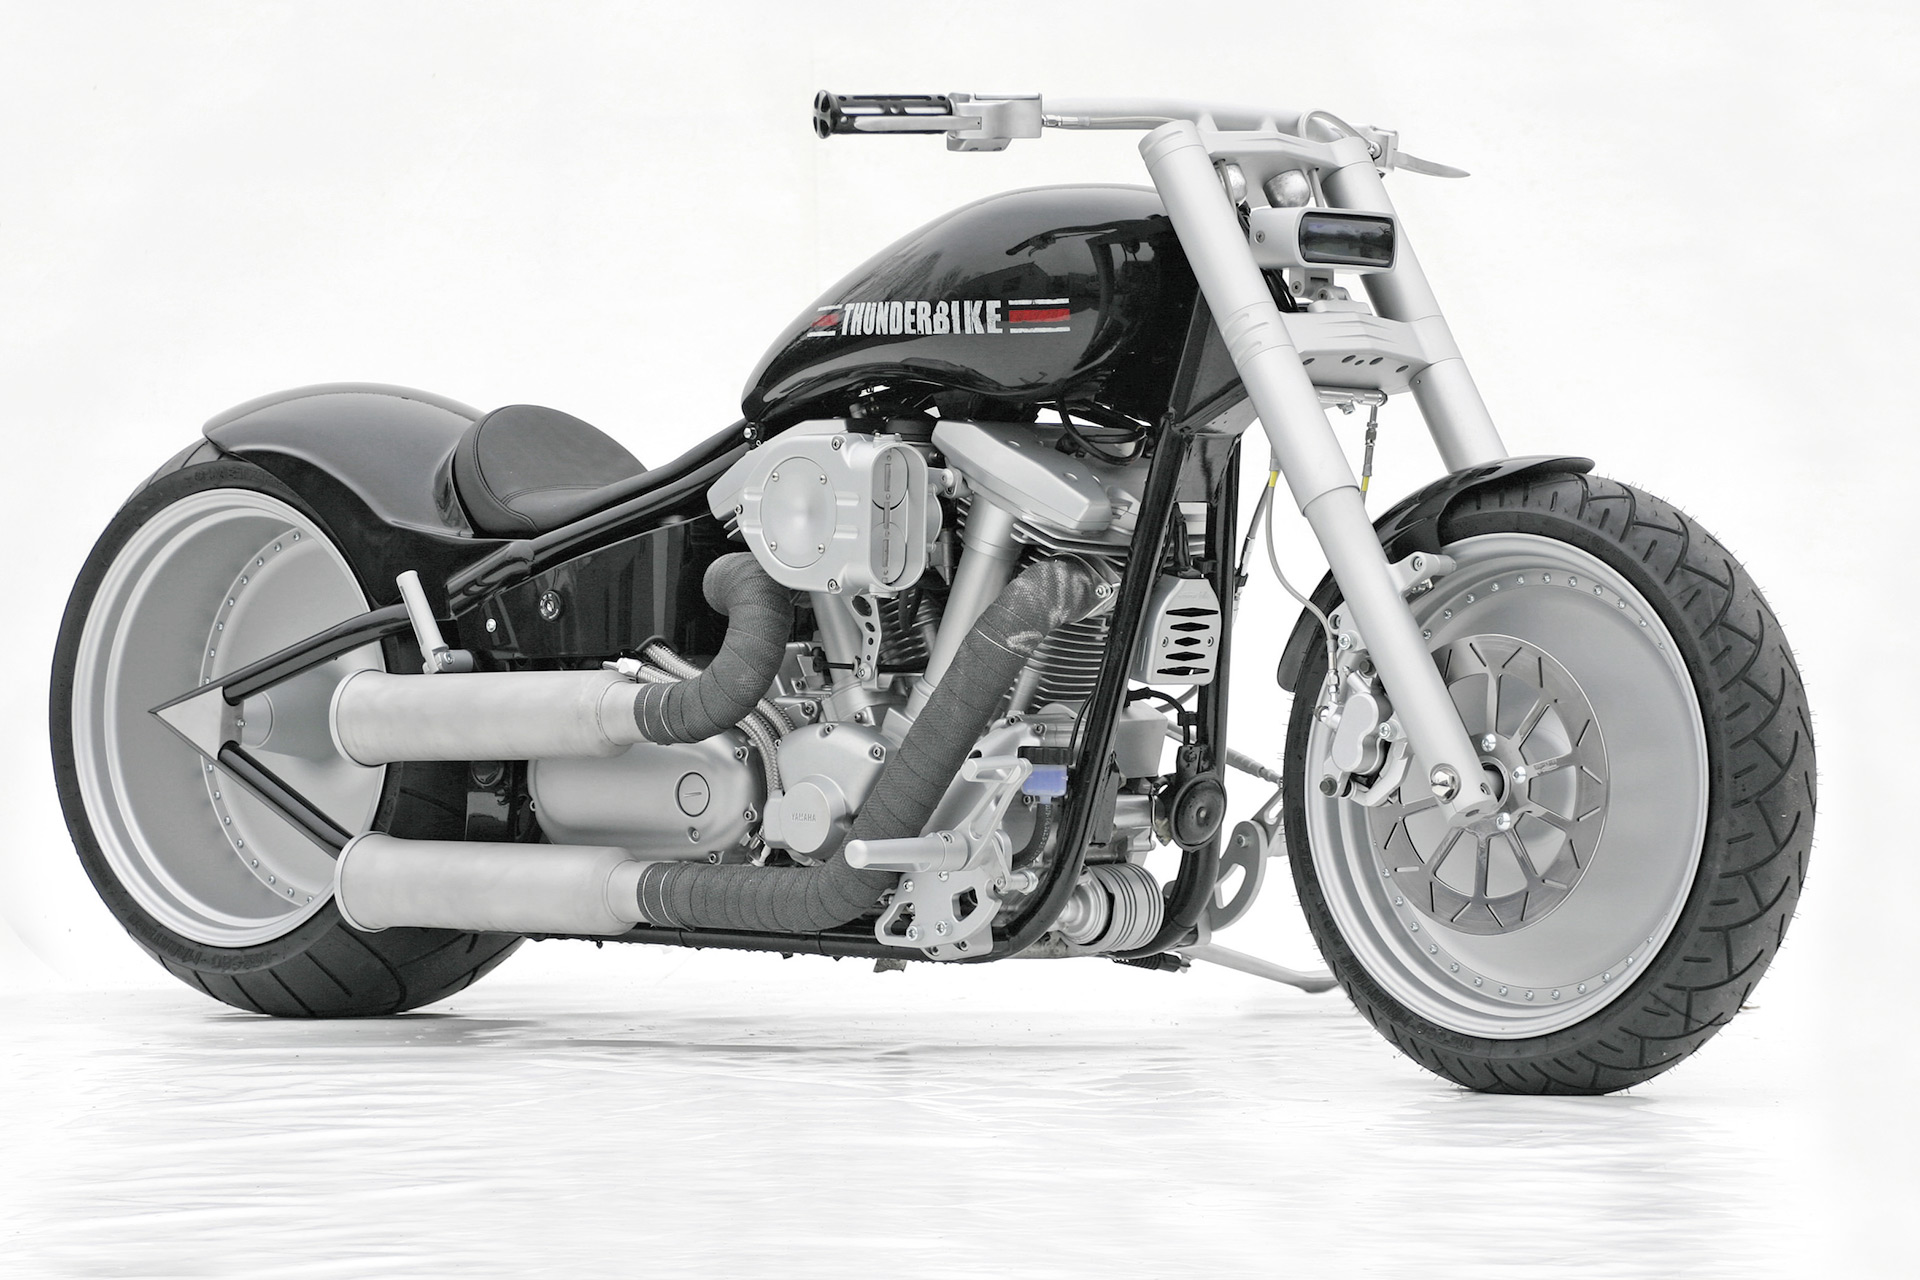 Customized Yamaha Motorcycles by Thunderbike